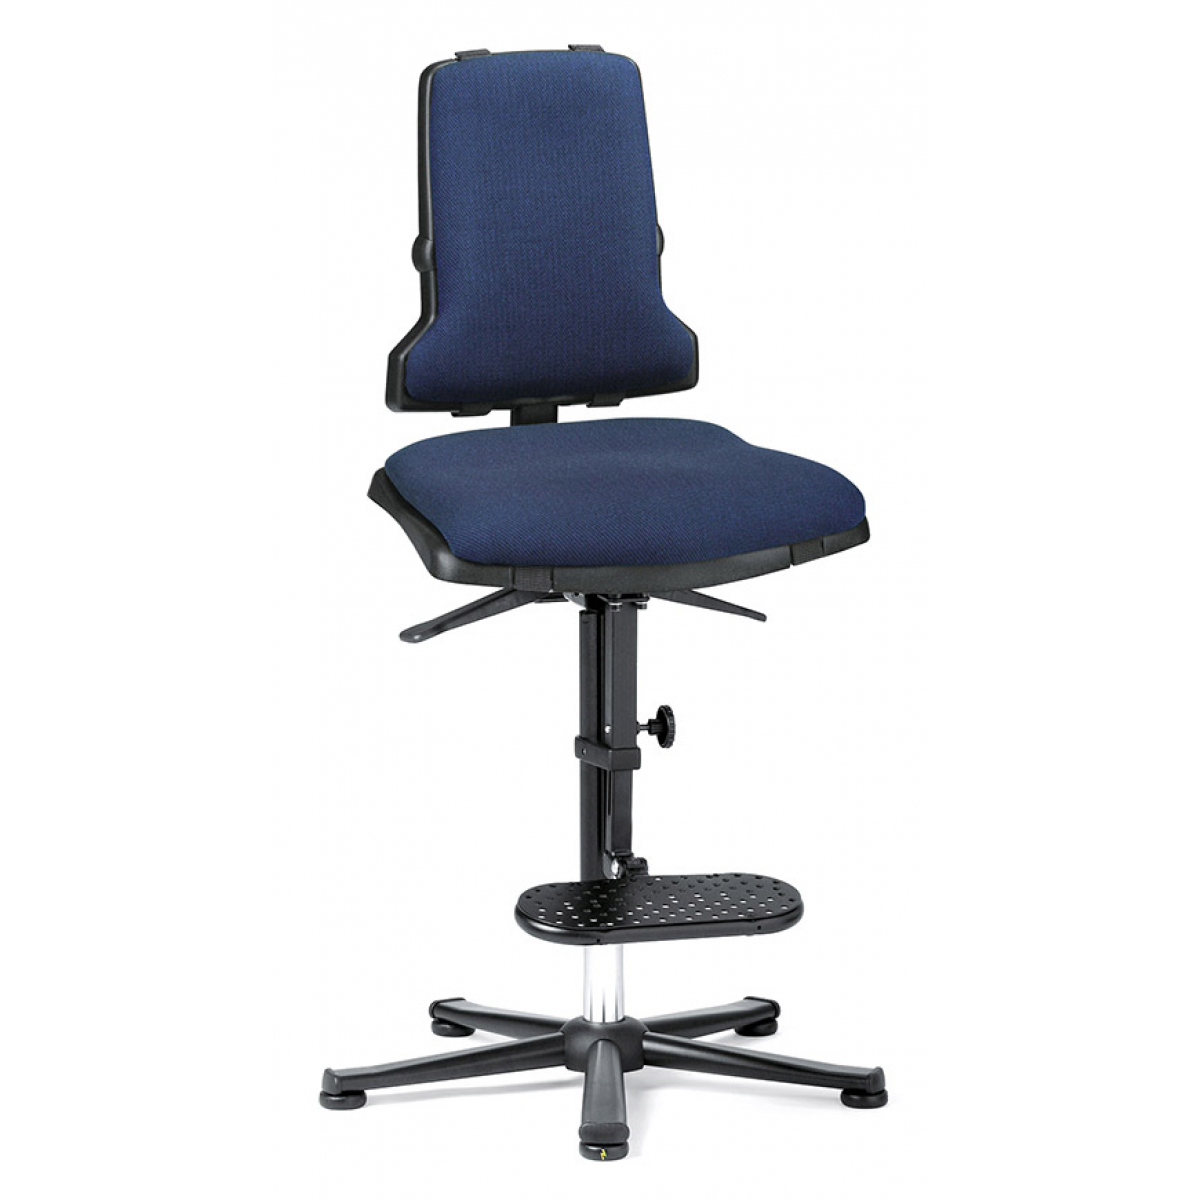 SINTEC ESD mit Gleitern und Aufstiegshilfe- der Innovative für individuelles Sitzen